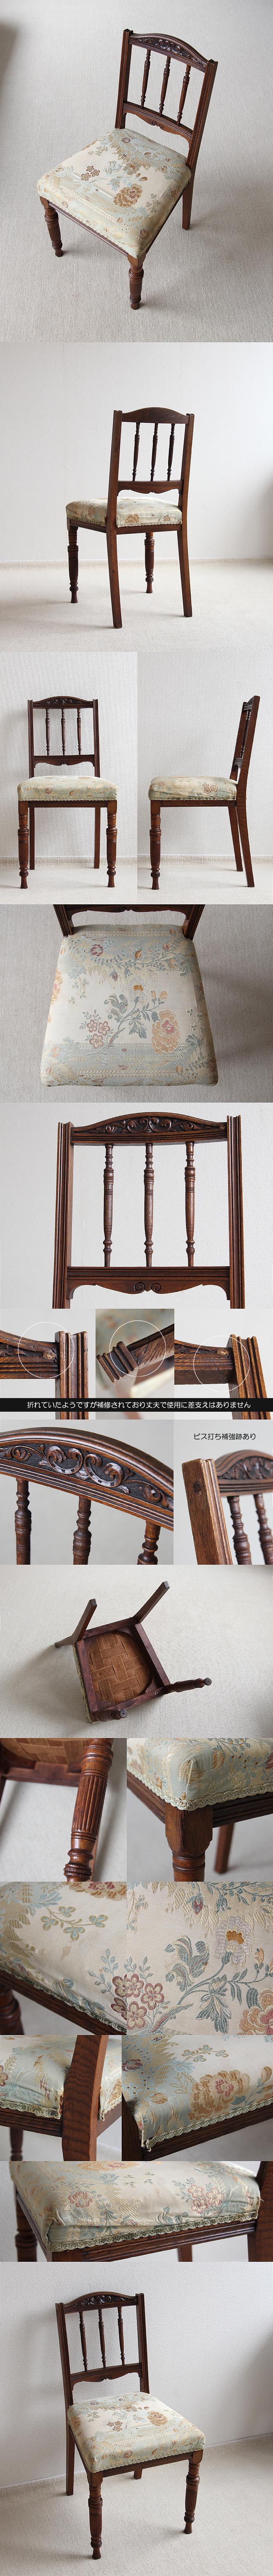 イギリス アンティーク ベッドサイドチェア 木製椅子 クッションシート 家具「装飾彫刻が素敵」P-337